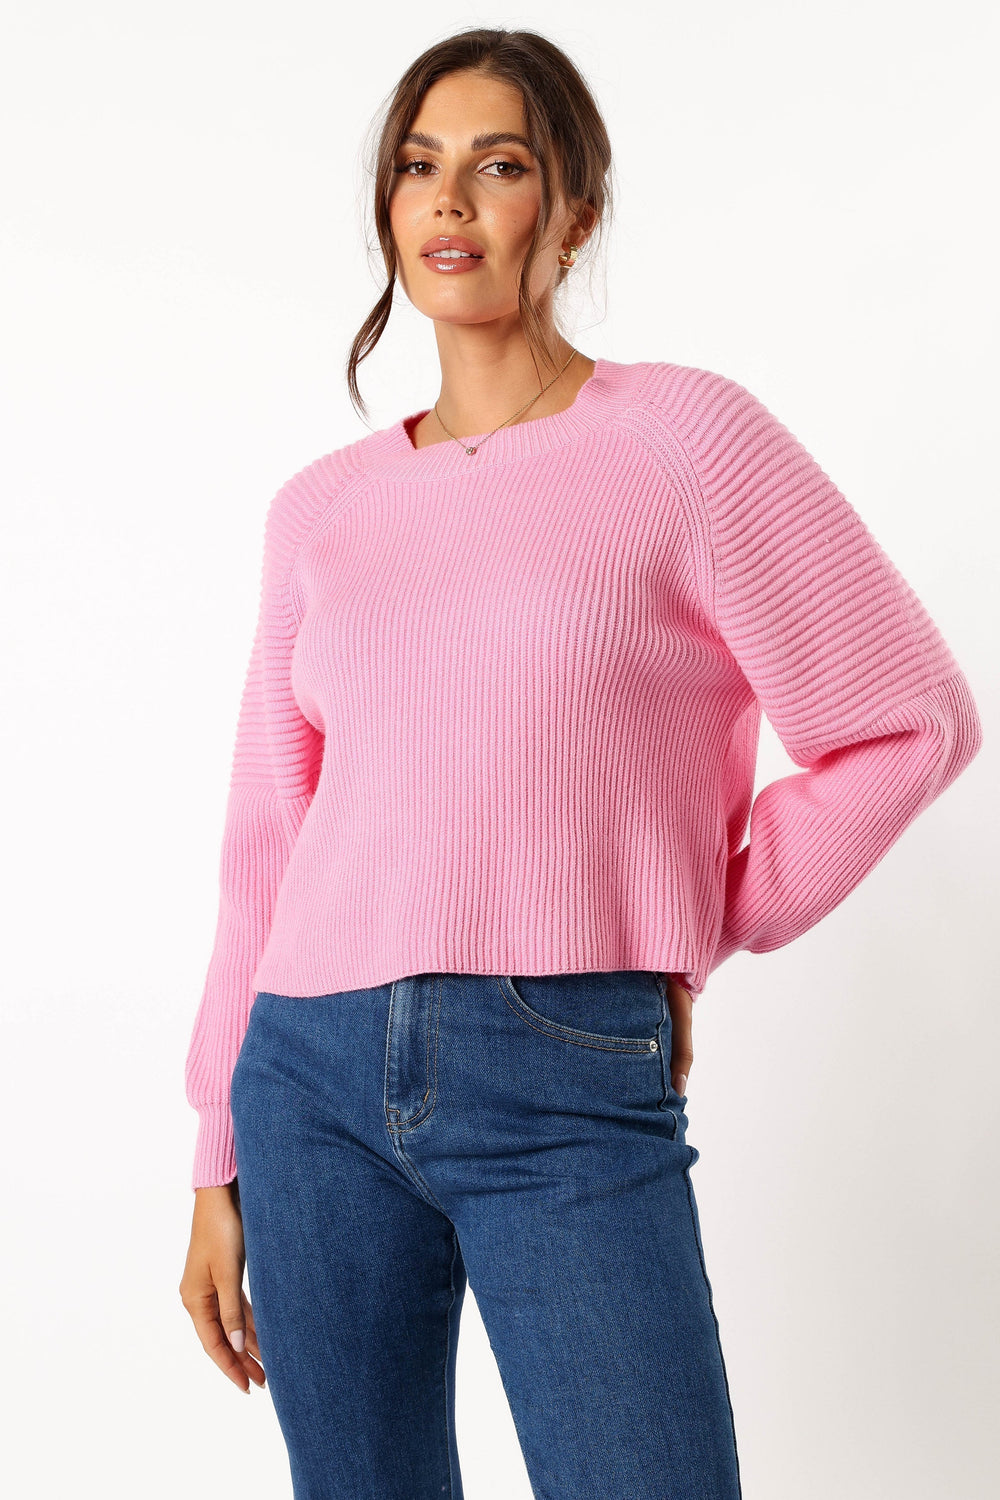 Sarah Knit Sweater - Pink - Petal & Pup USA